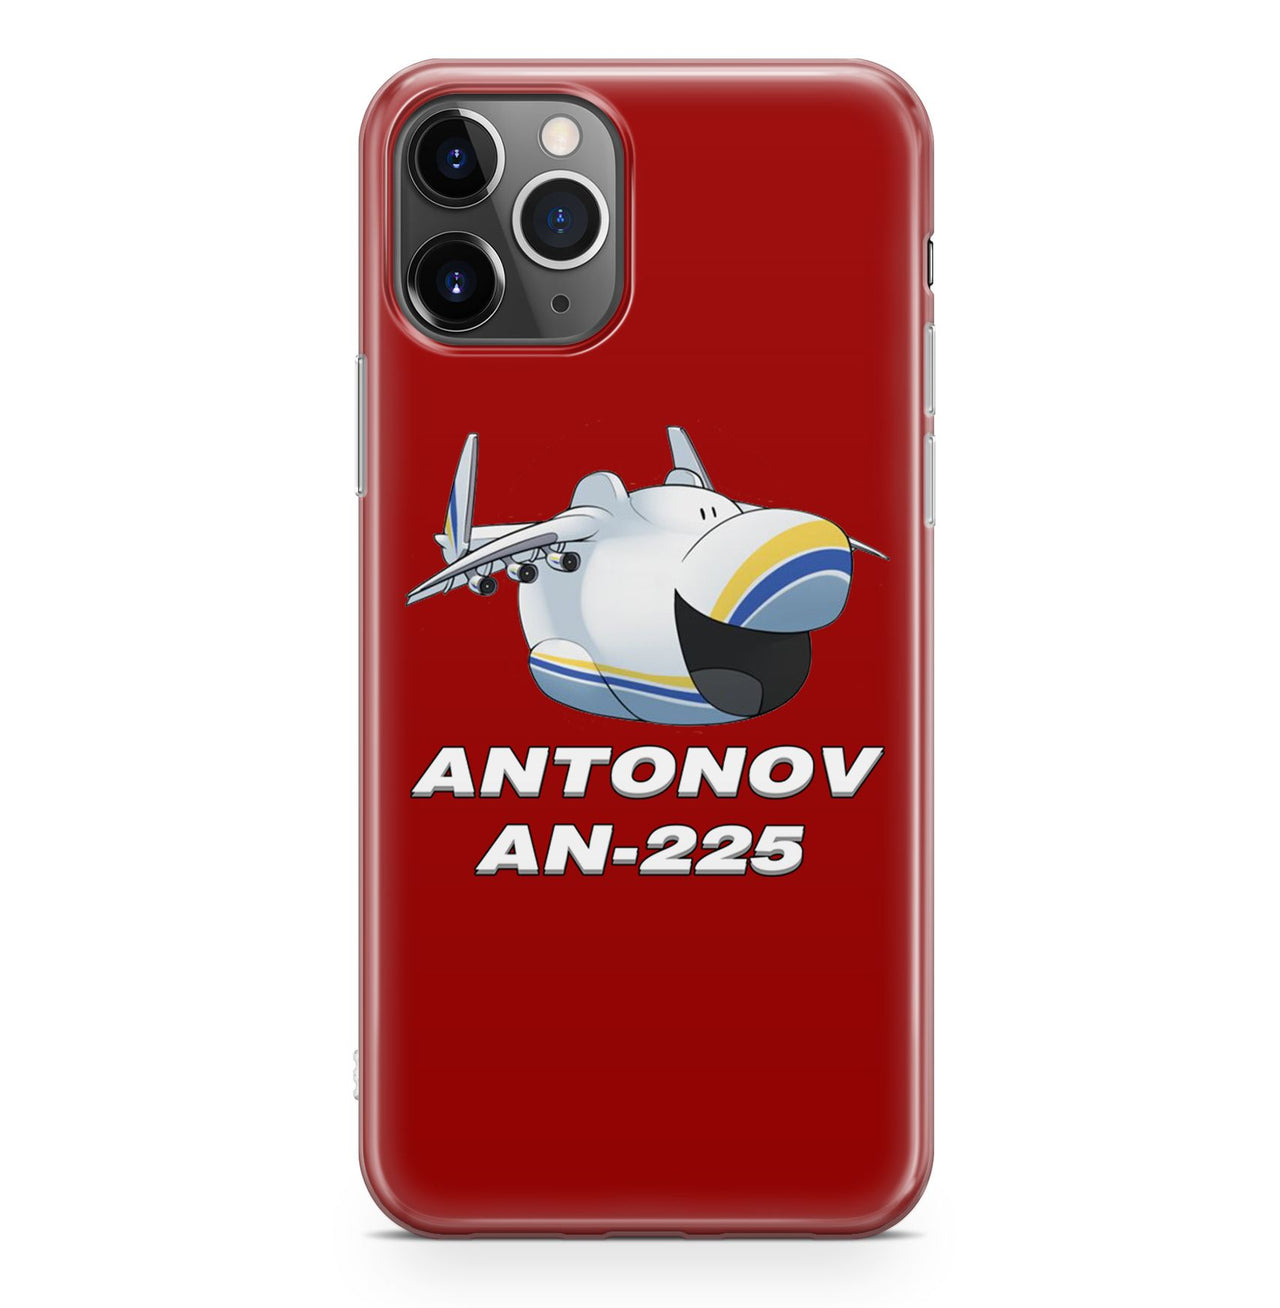 Antonov AN-225 (23) Designed iPhone Cases